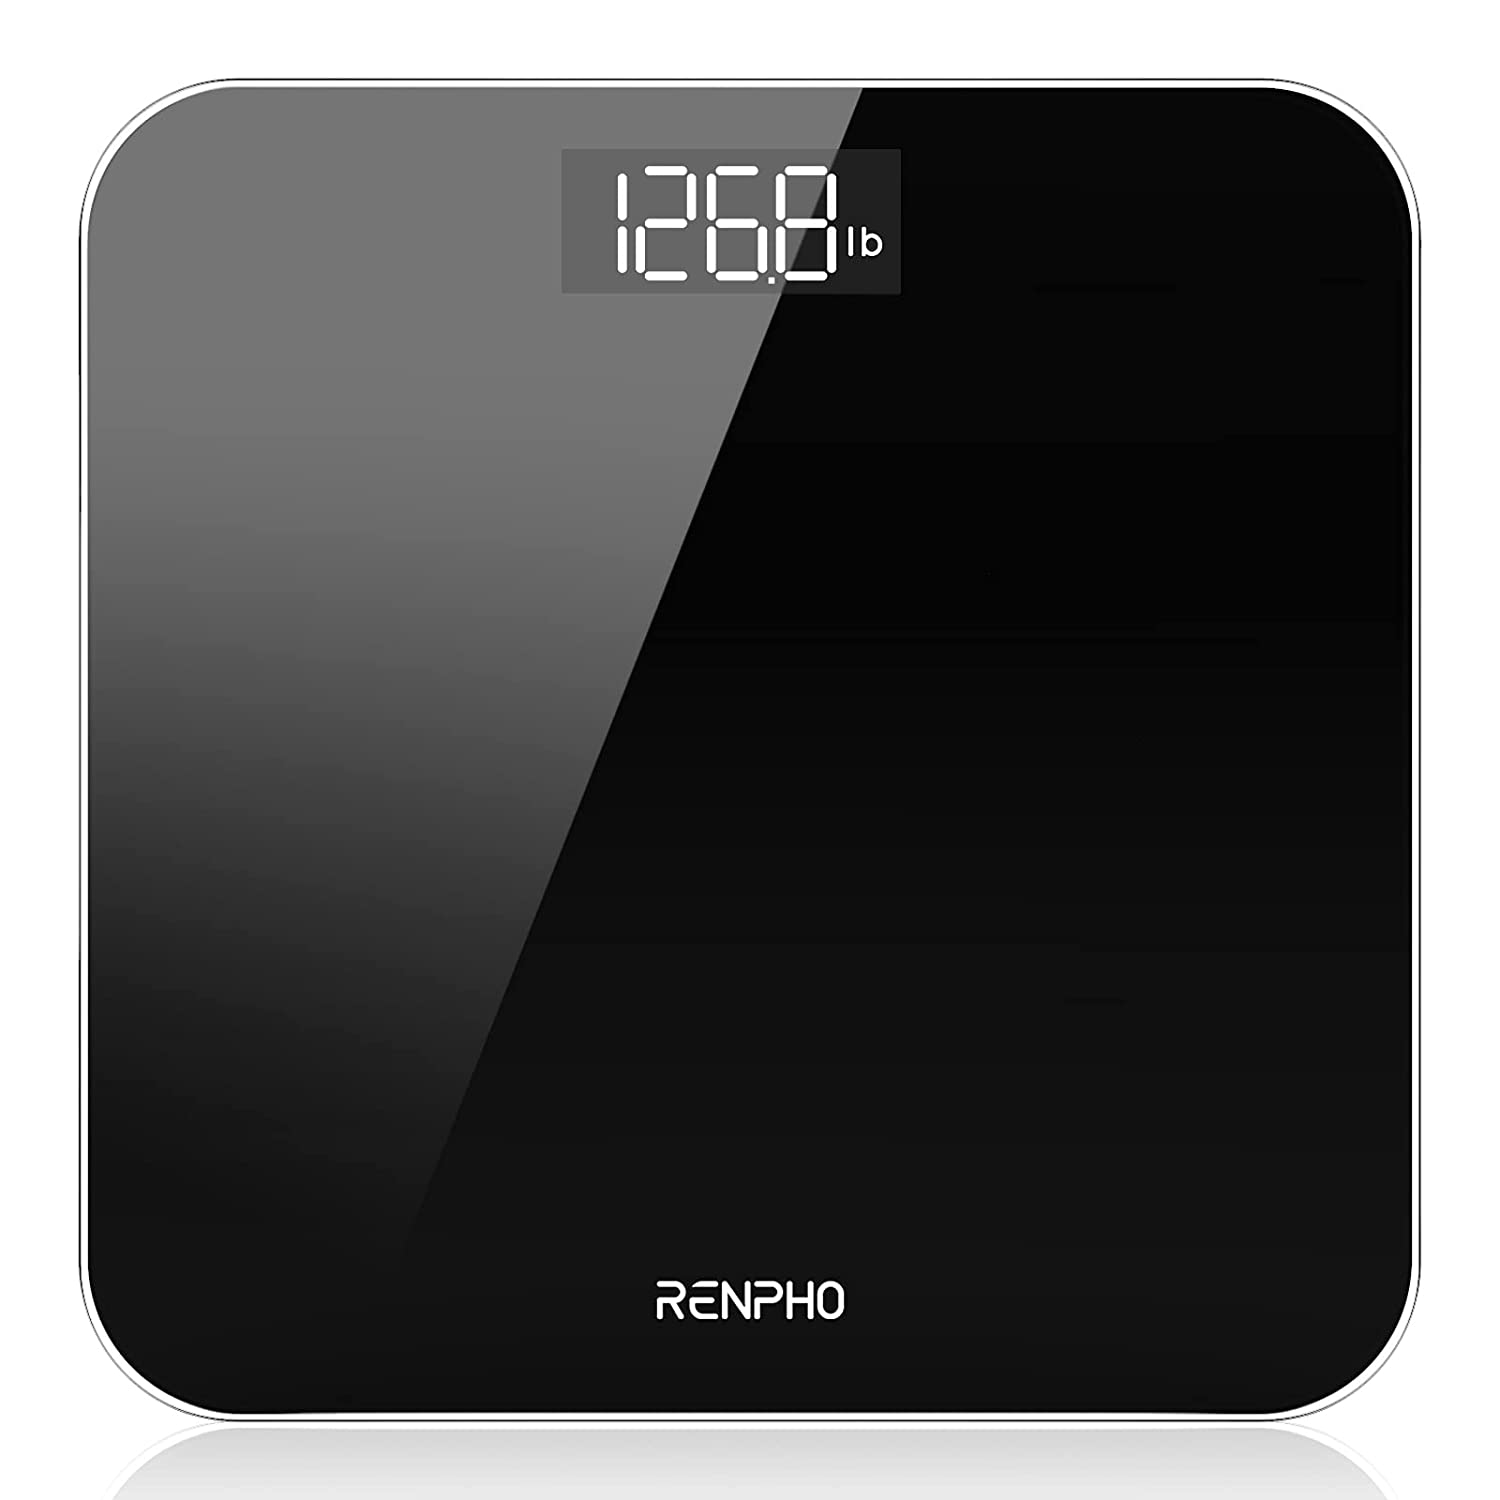 Renpho Smart Scale